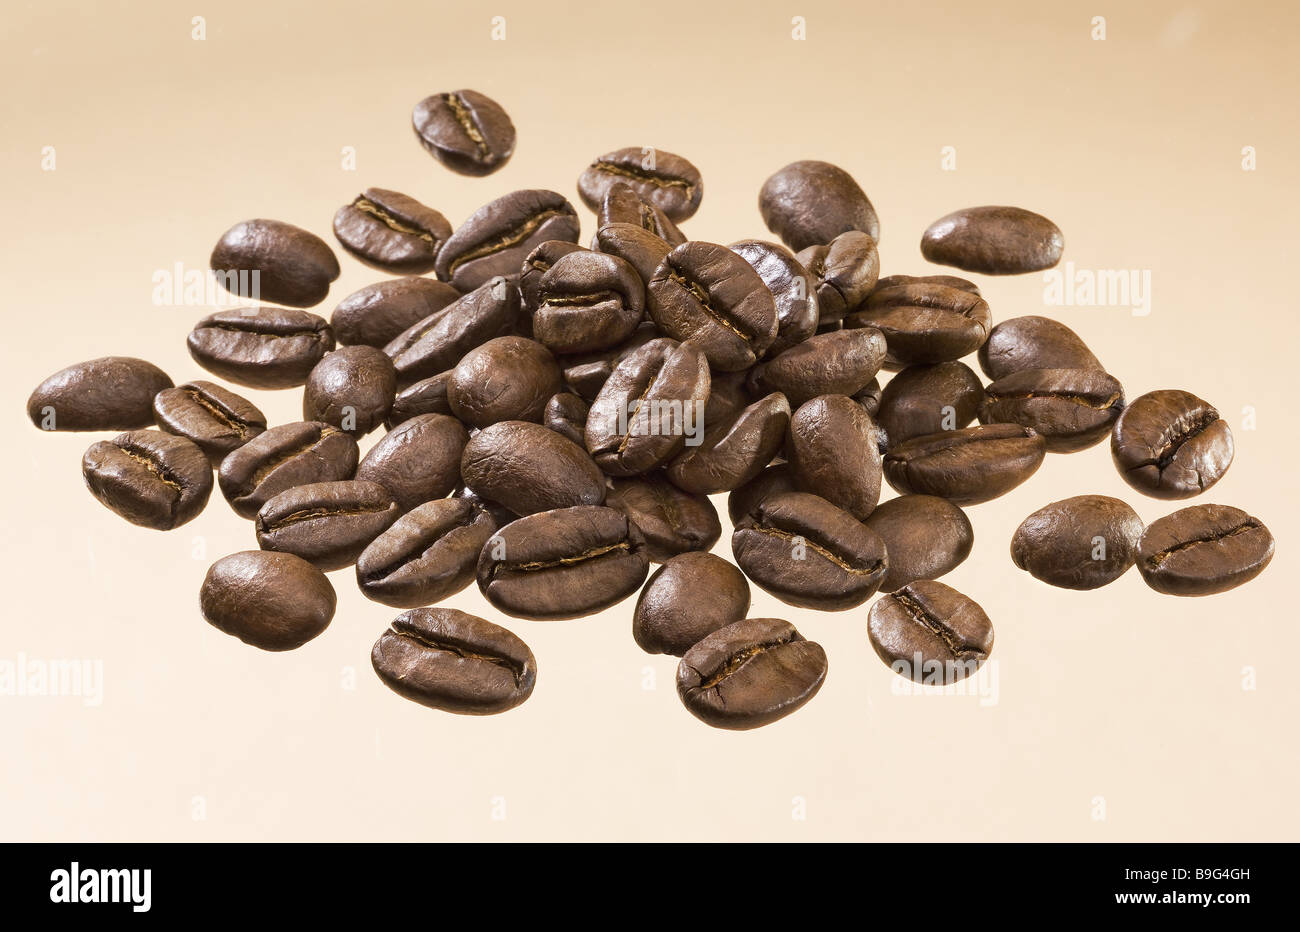 Kaffeebohnen geröstet ansprechende Produkte Kaffeebohne Kaffee gerösteten Kaffee Stein-Kernel Steinobst Bohnen braun braten-frisch Stockfoto